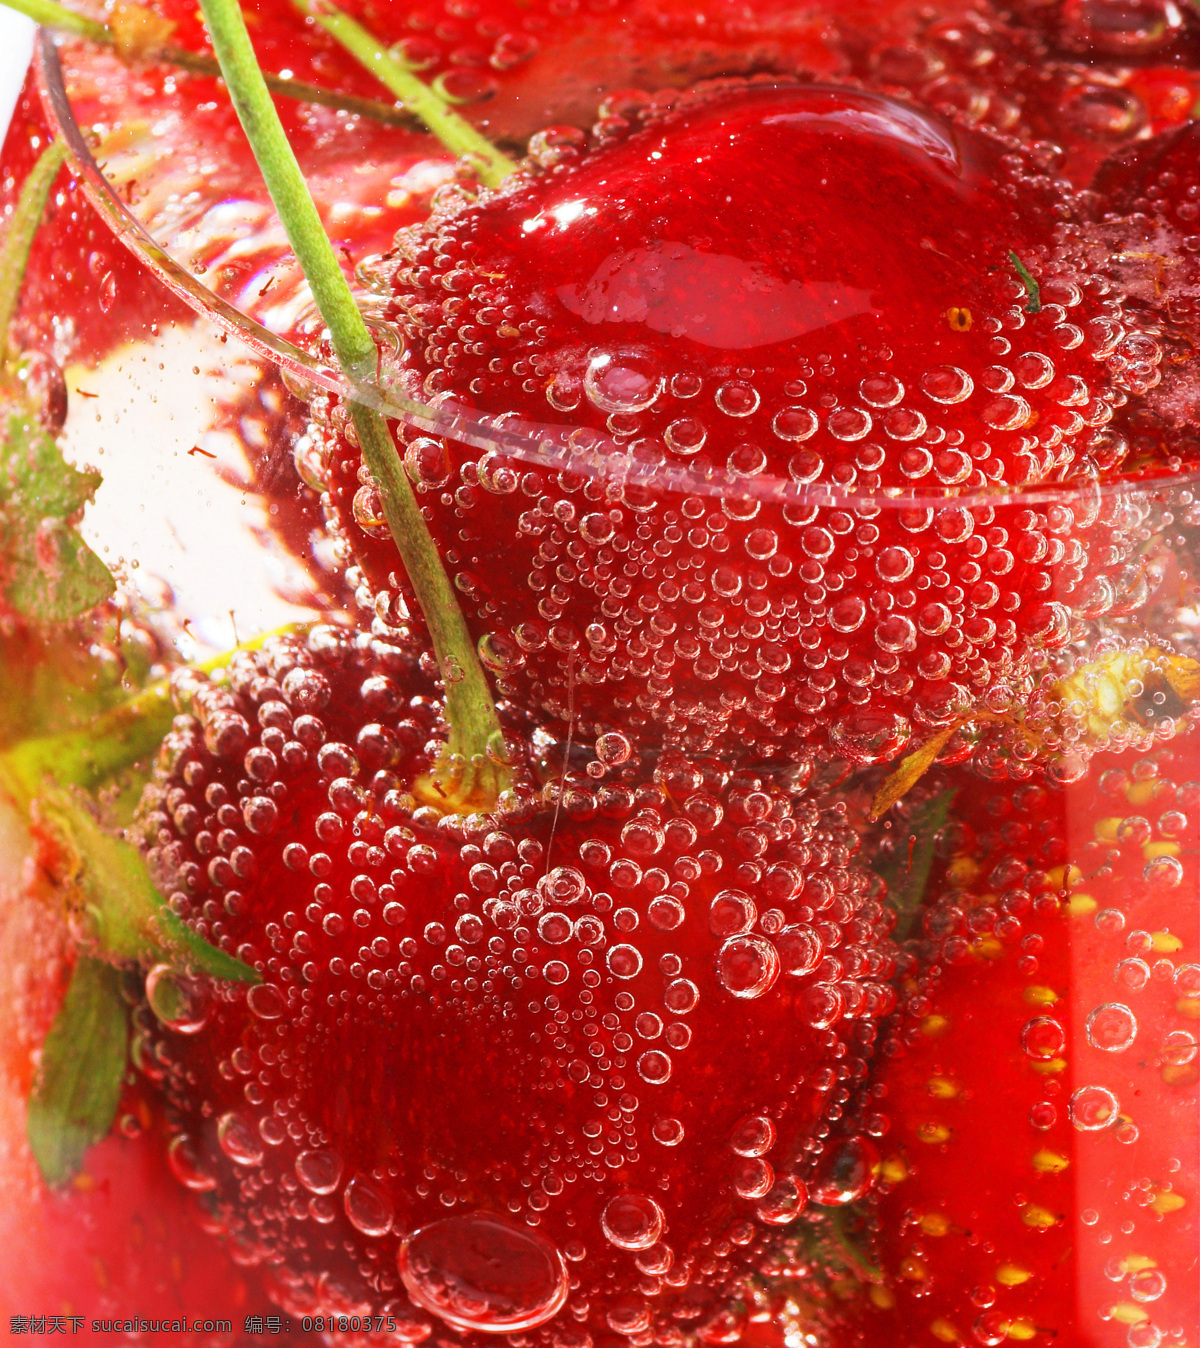 草莓 动感 涟漪 生物世界 水滴 水果 水珠 樱桃 设计素材 模板下载 主题 psd源文件